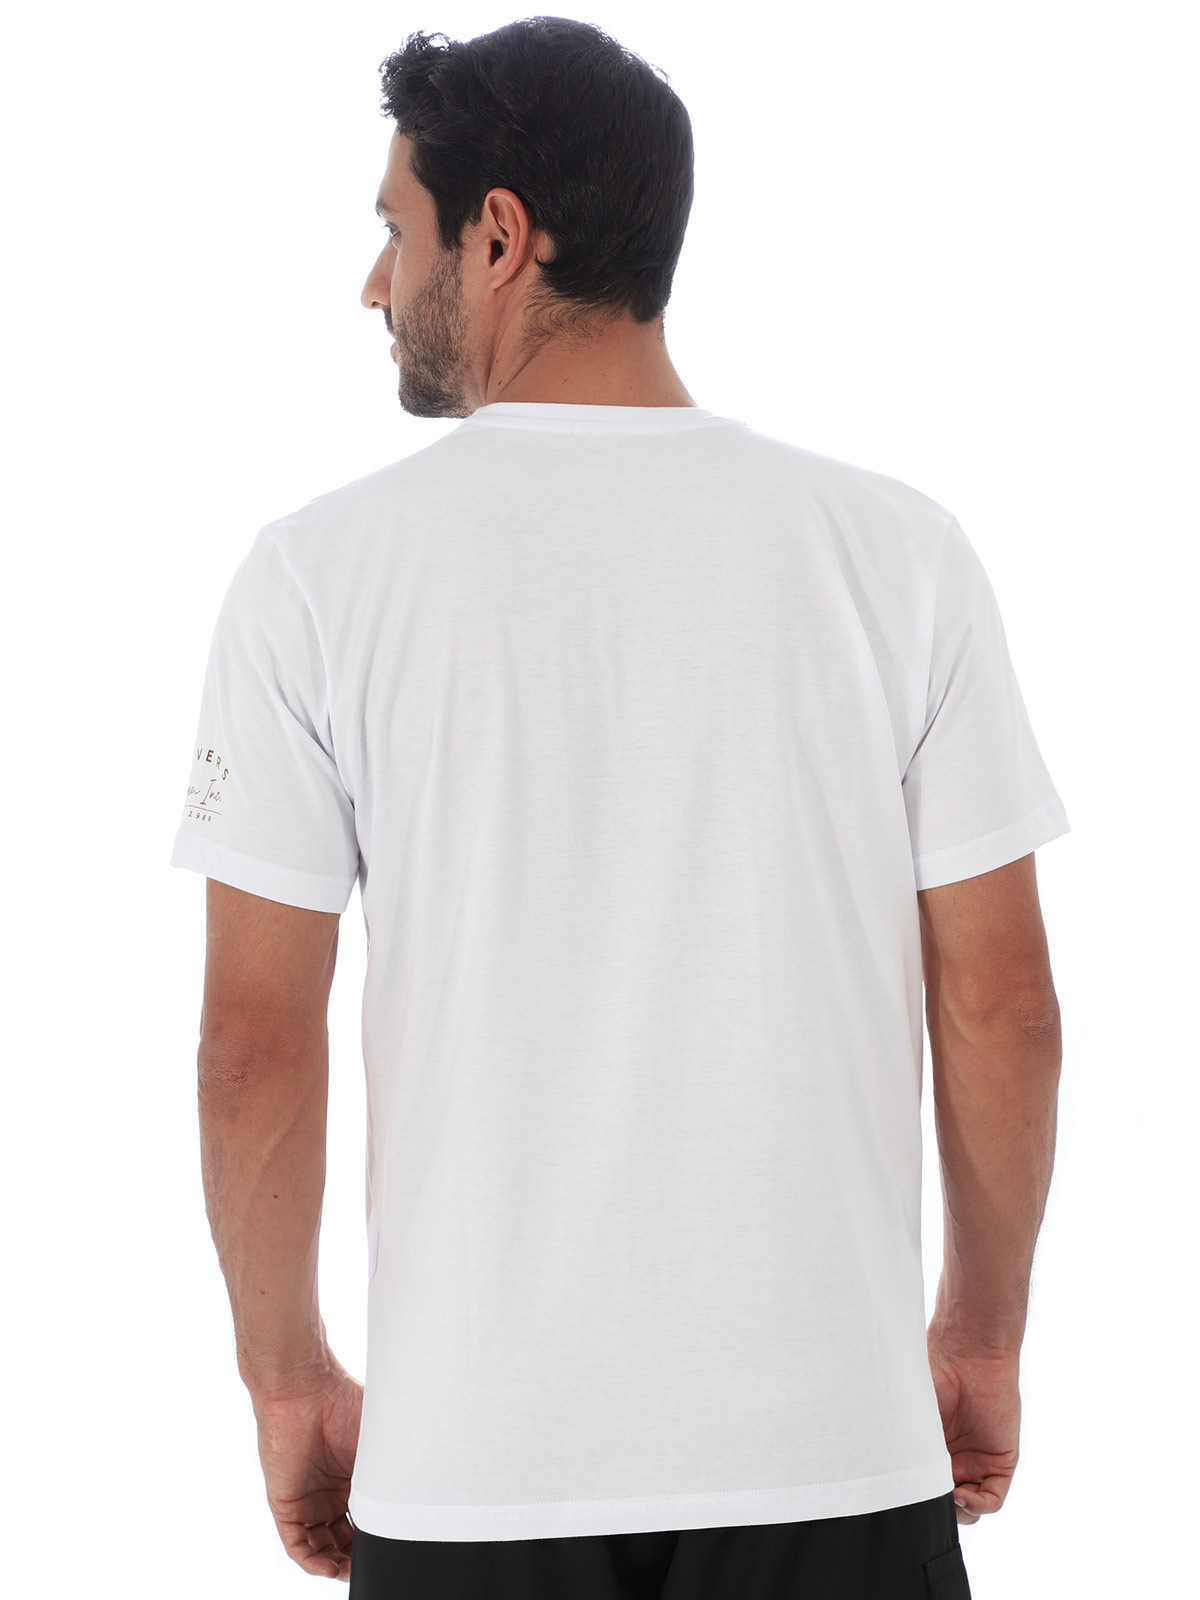 Camiseta Masculina de Algodão Básica Estampa Divers Branca